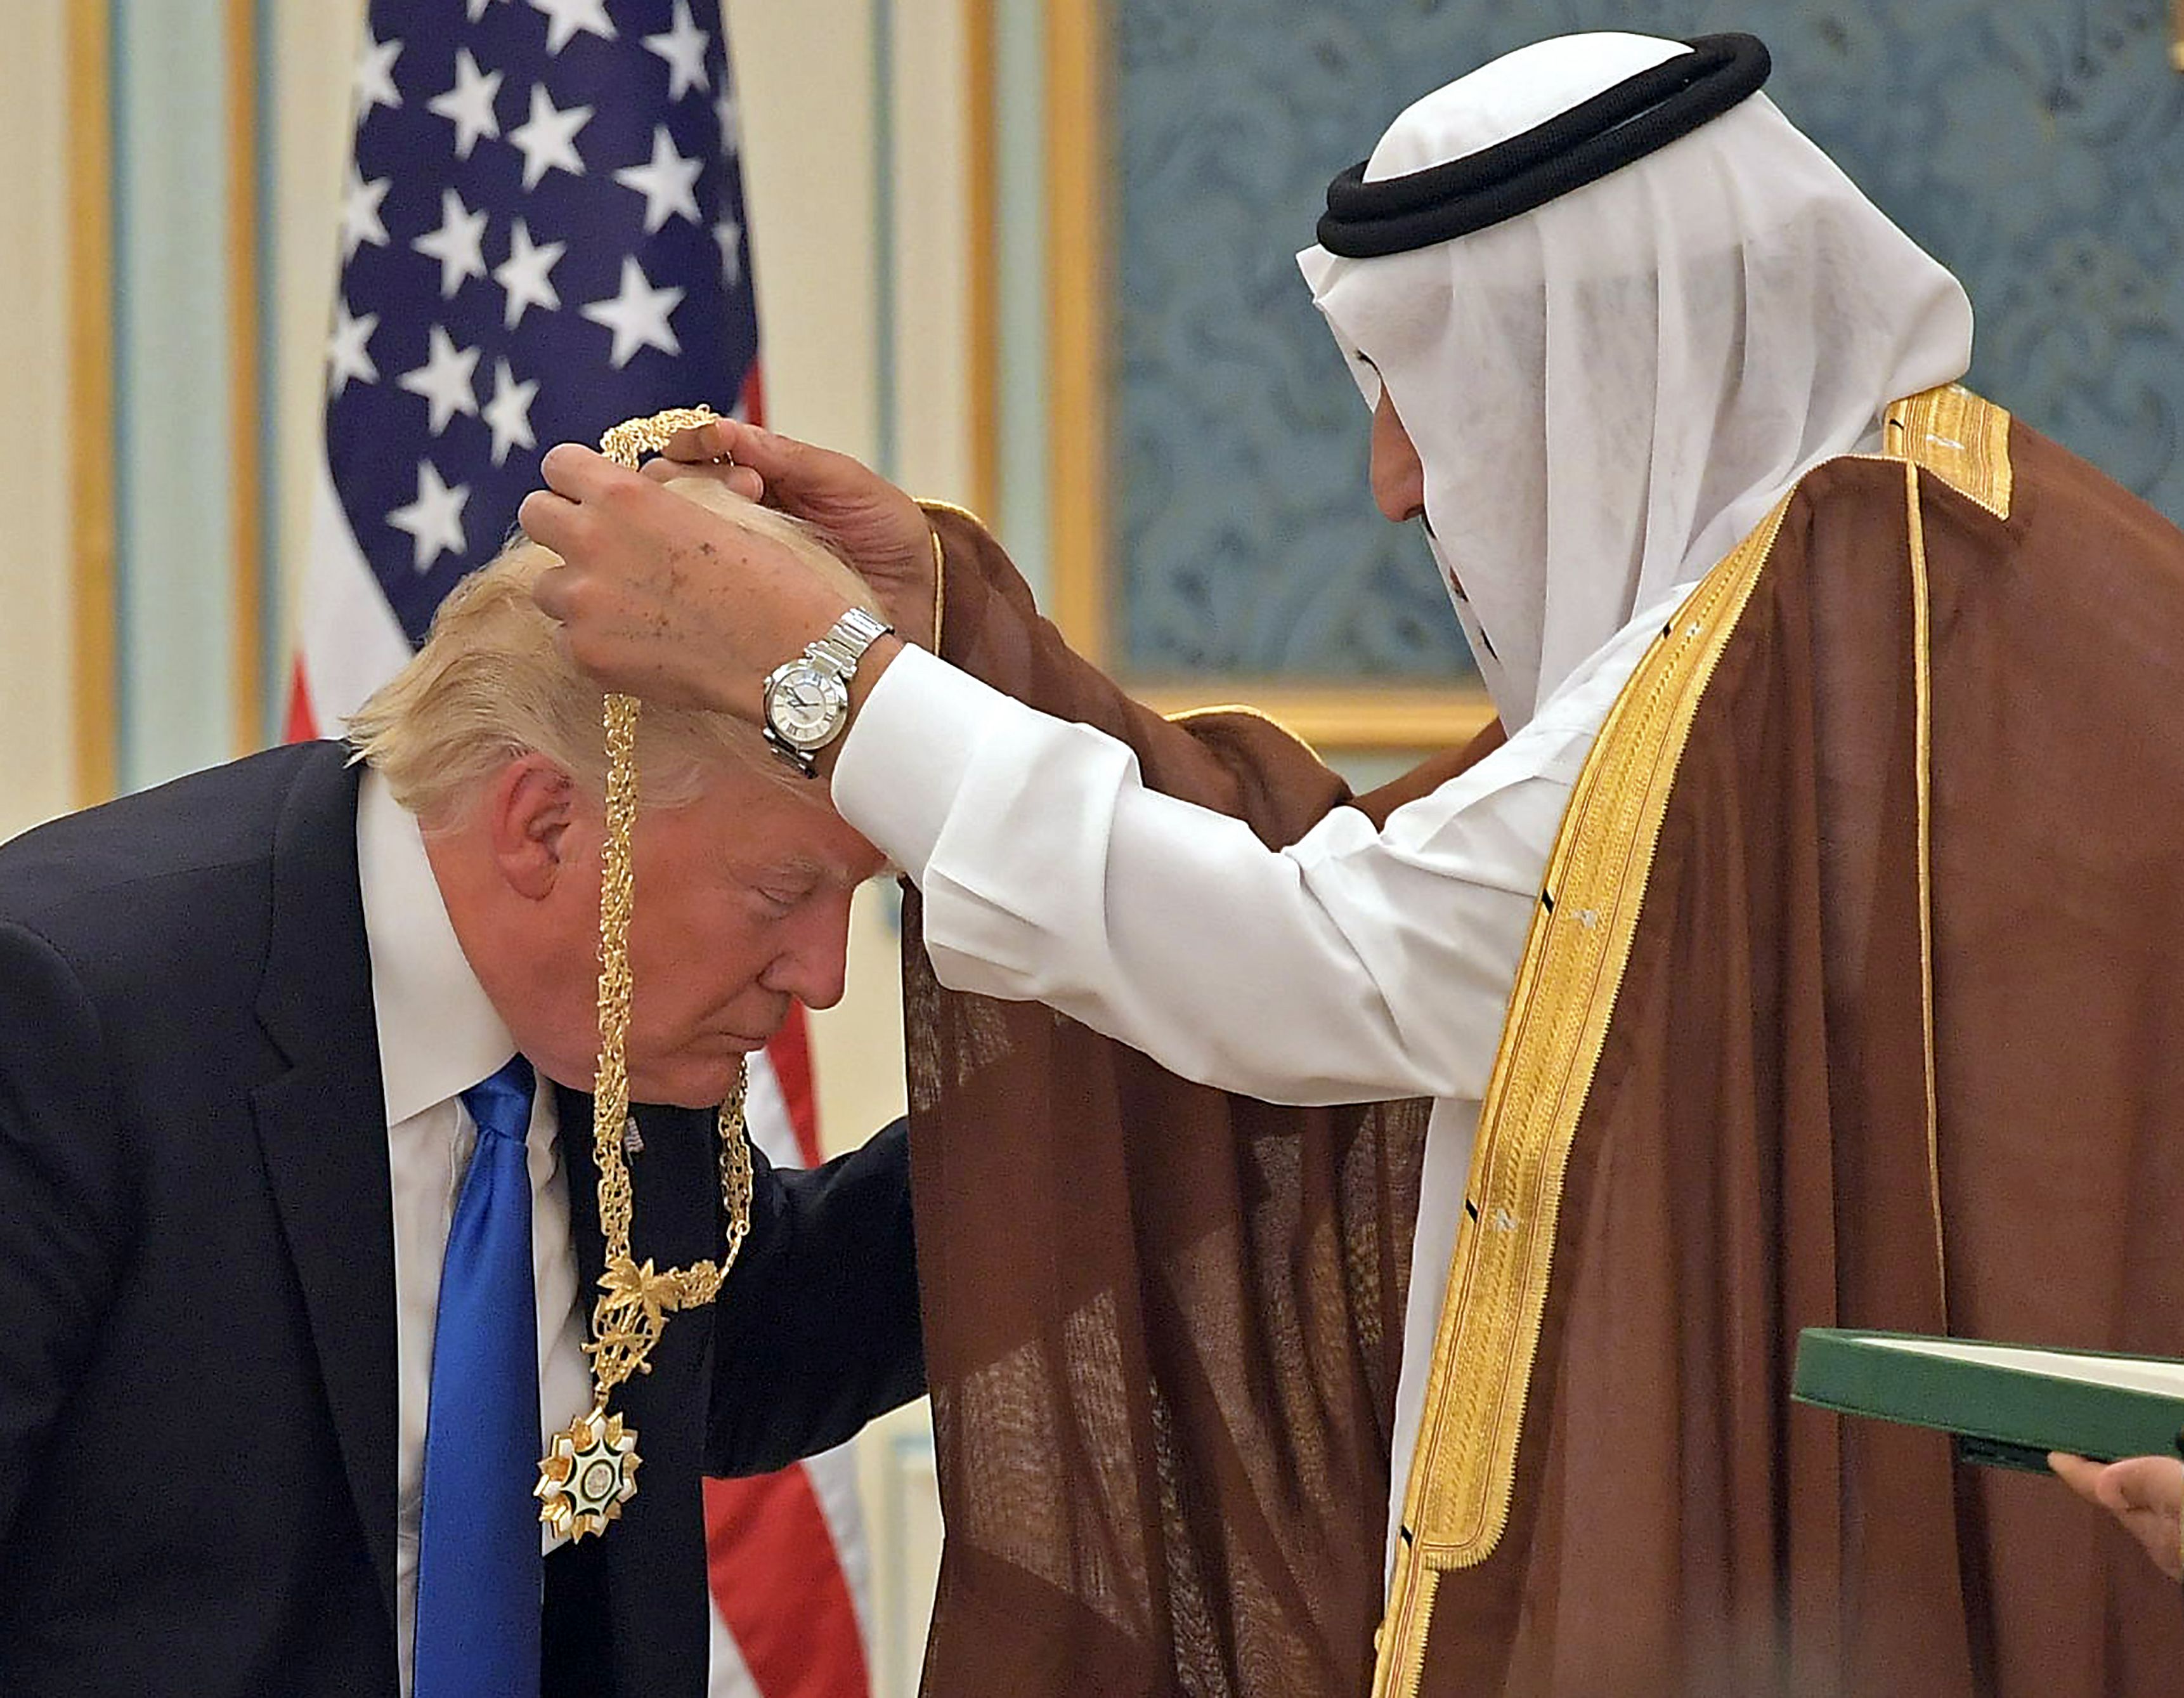 170520112811-trump-saudi-gold-medal.jpg